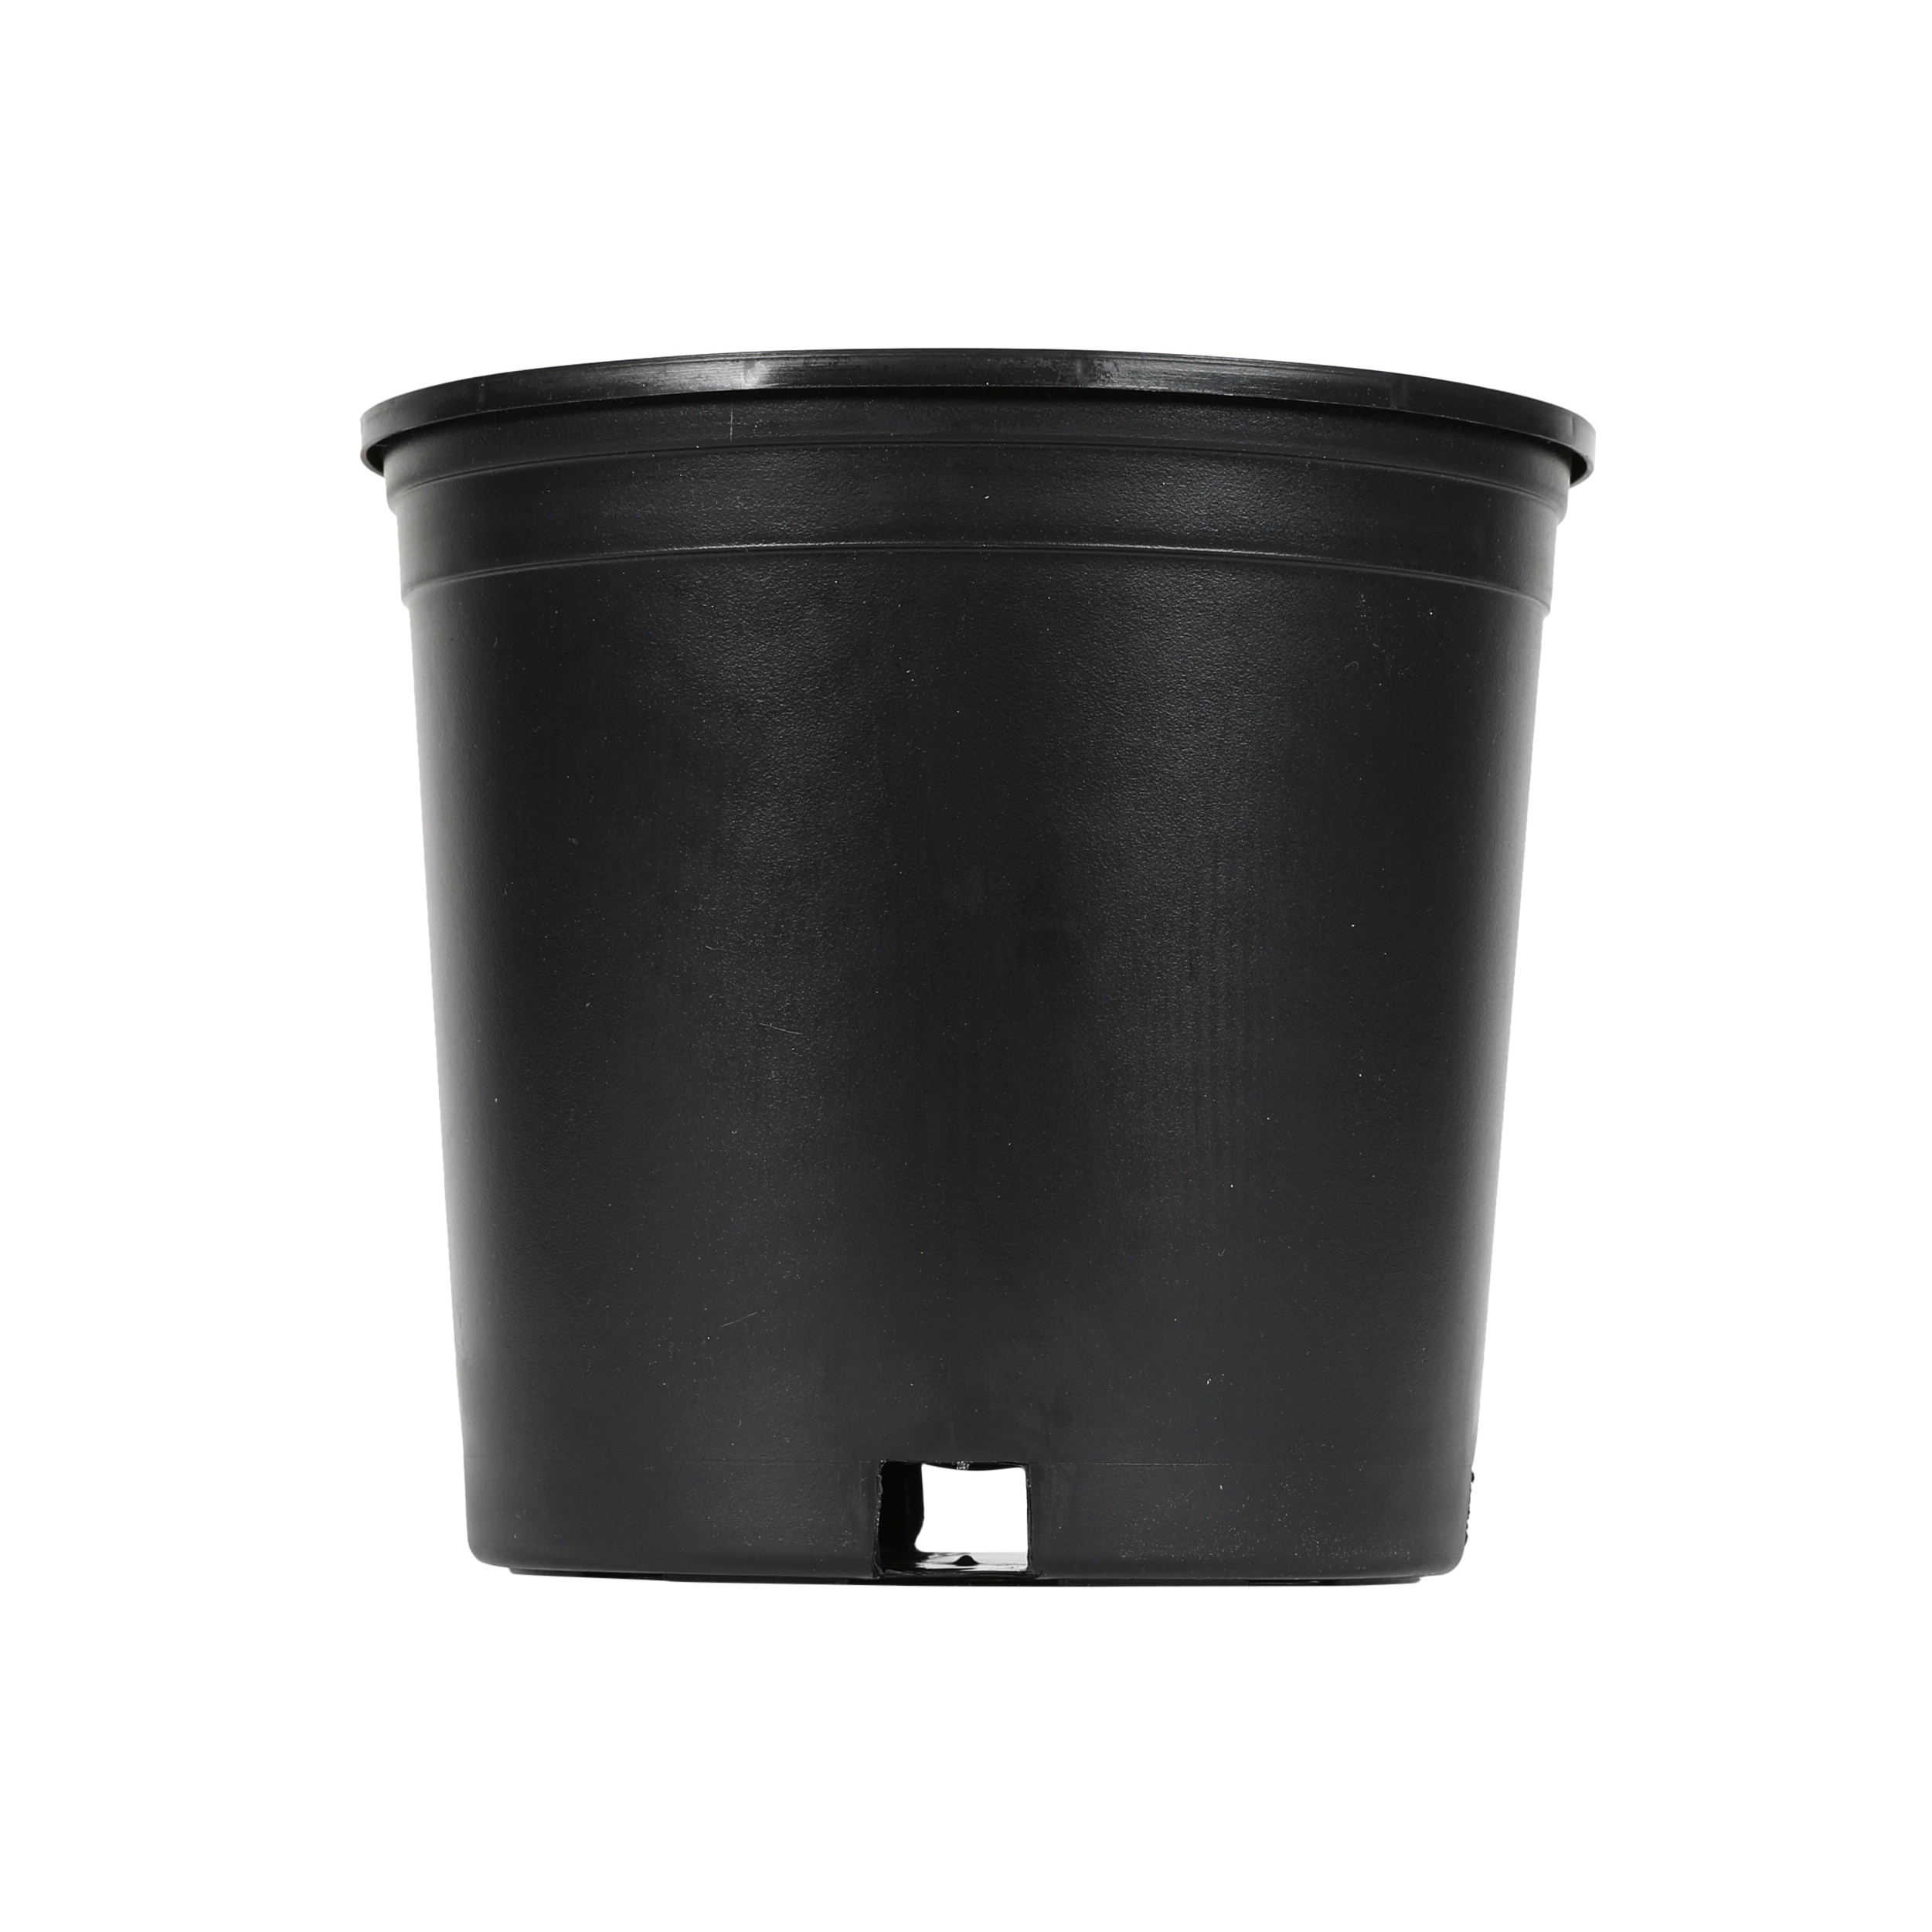 Self-watering Plastic Indoor Outdoor Planter Pot White 8x8